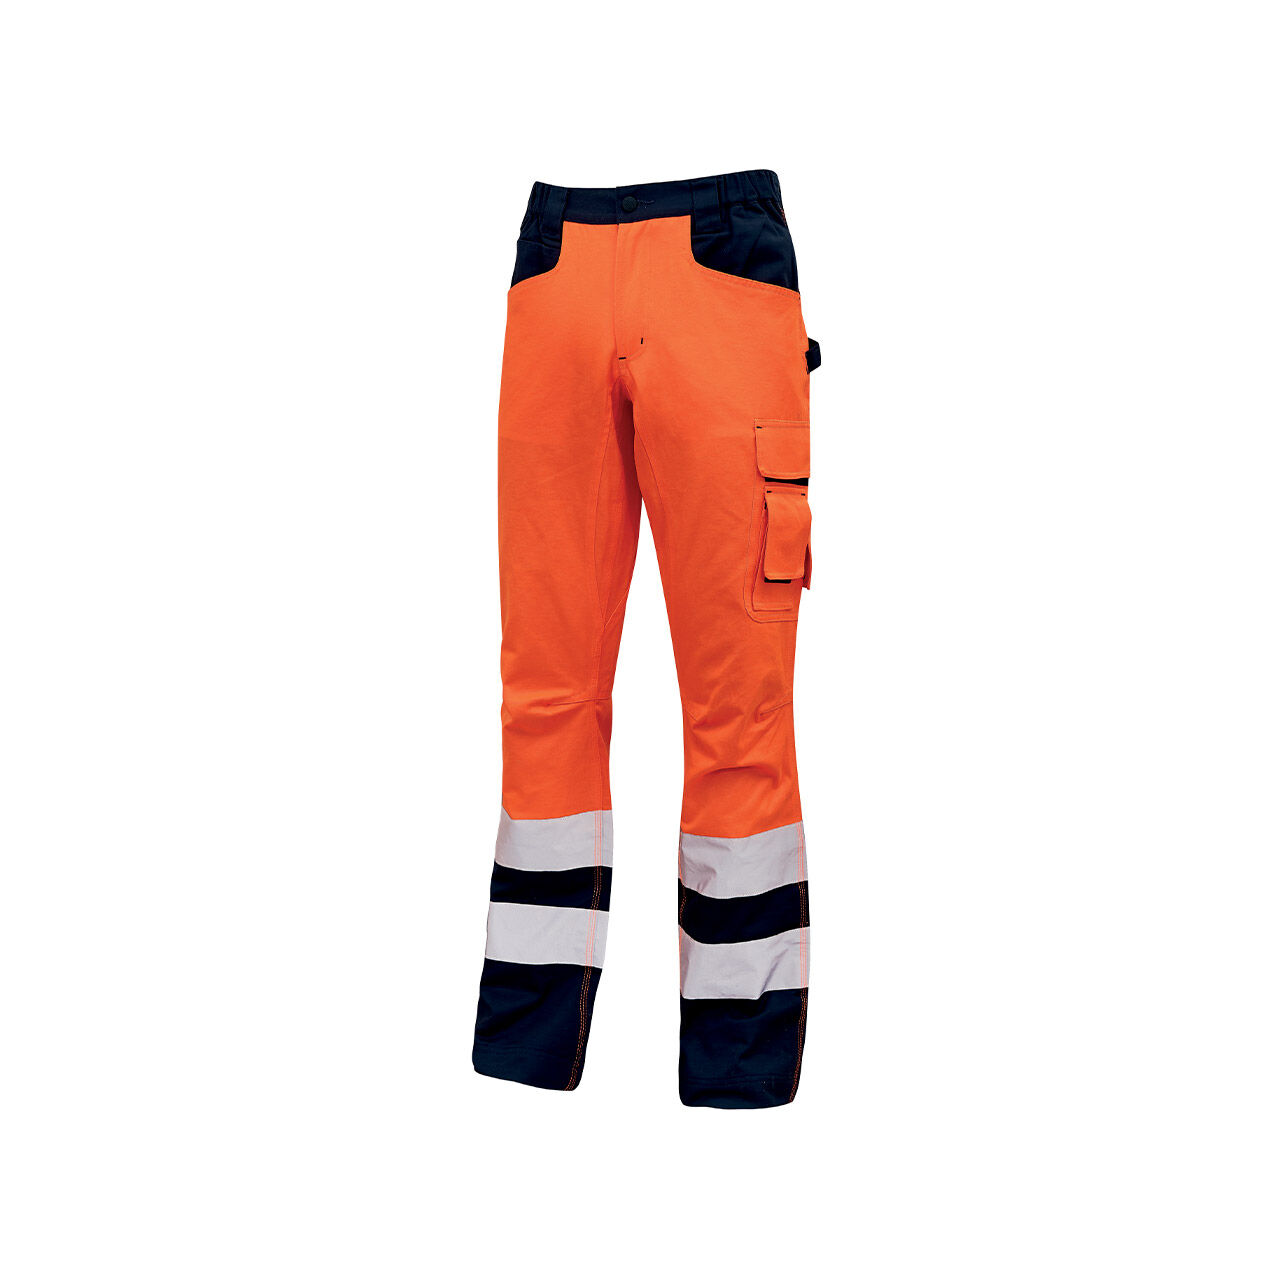 Pantalon imperméable ignifuge orange lustré avec bandes réfléchissantes  grises